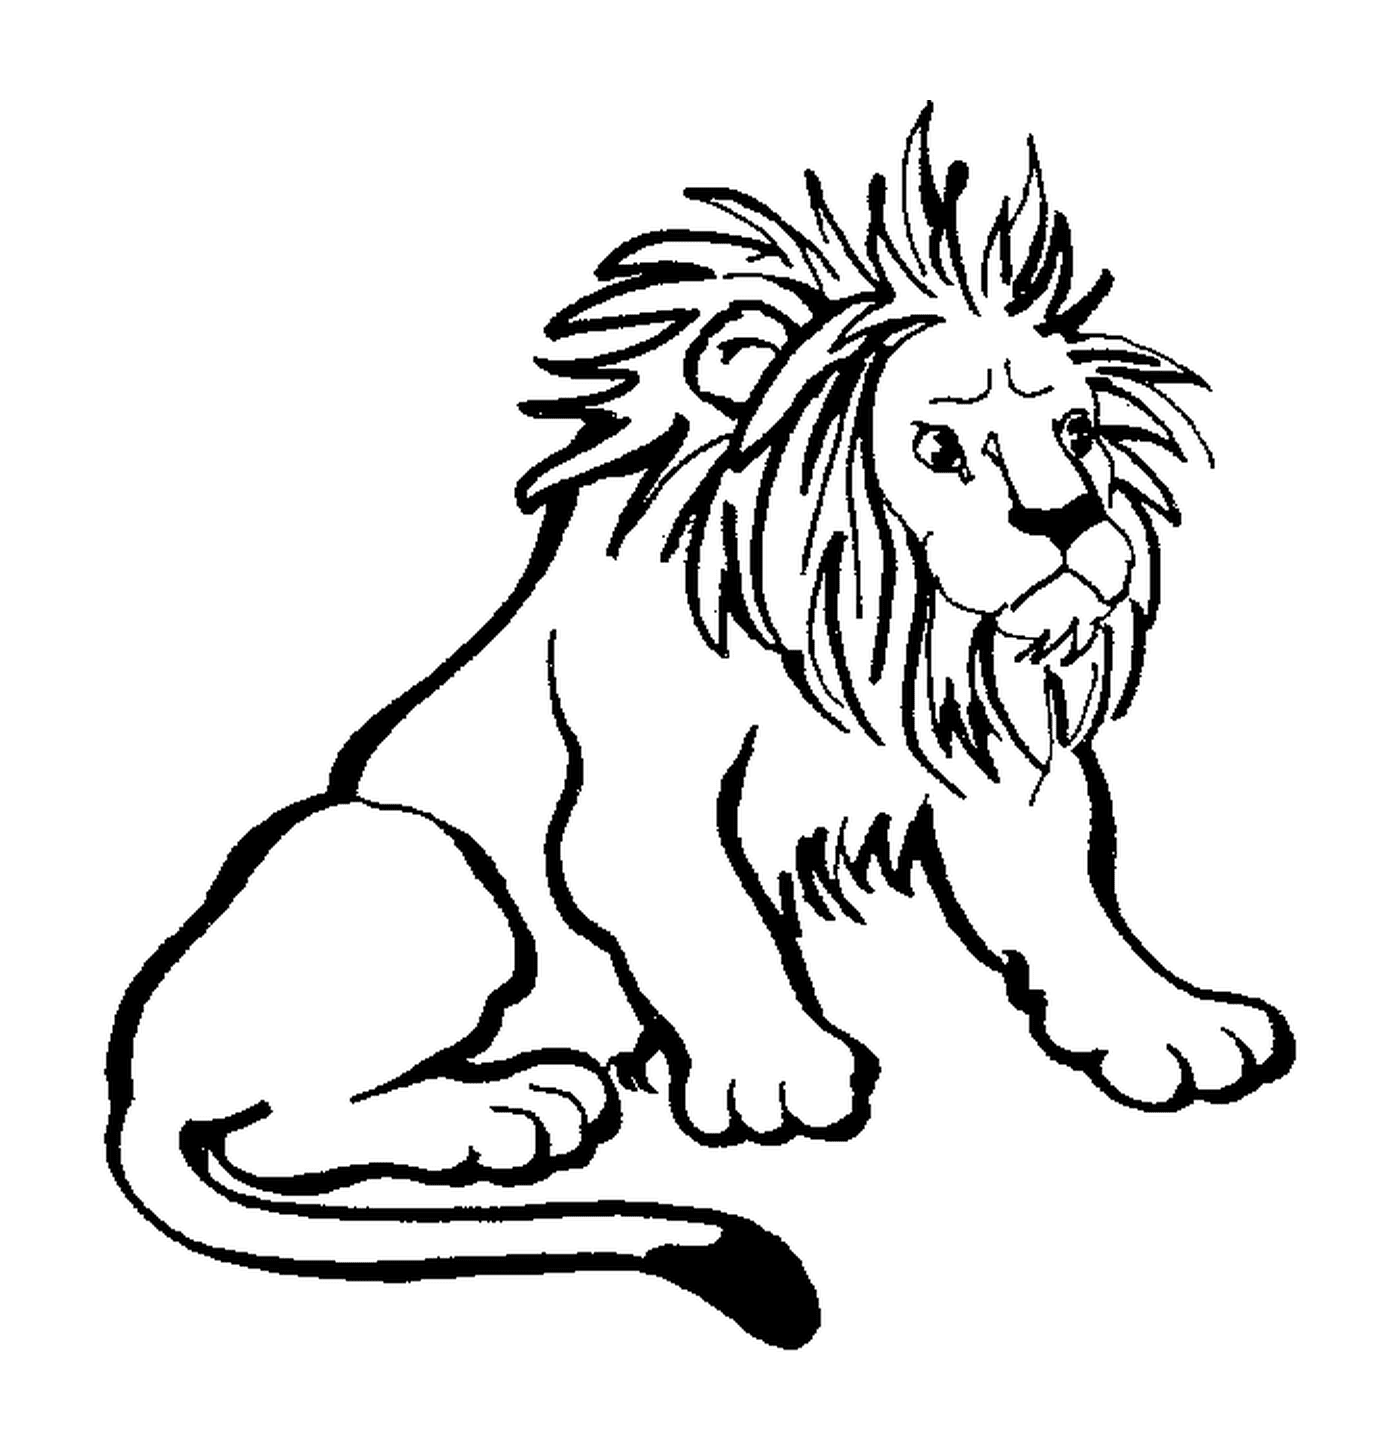   Roi de la jungle, puissant lion 